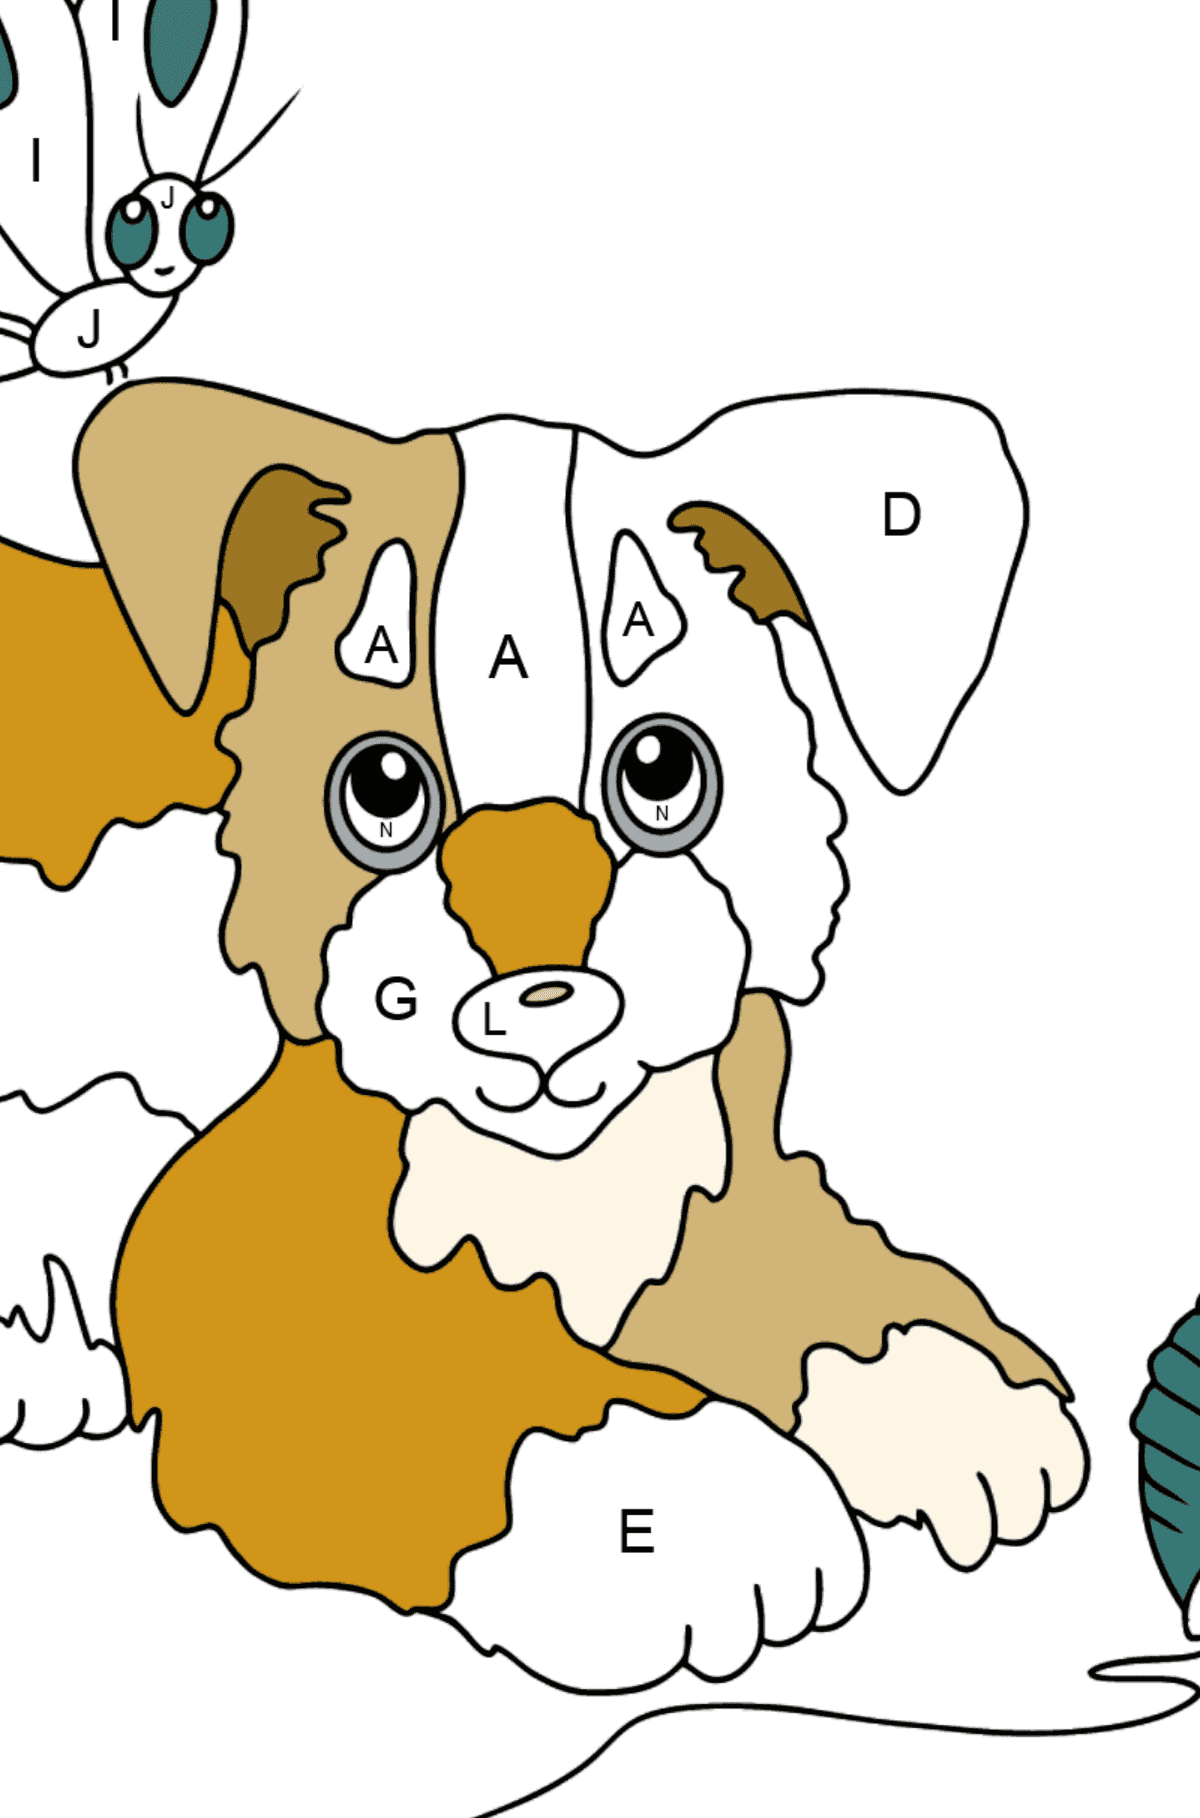 Dibujo para Colorear - Un Perro está Jugando con un Bola de Estambre y con Mariposas - Colorear por Letras para Niños